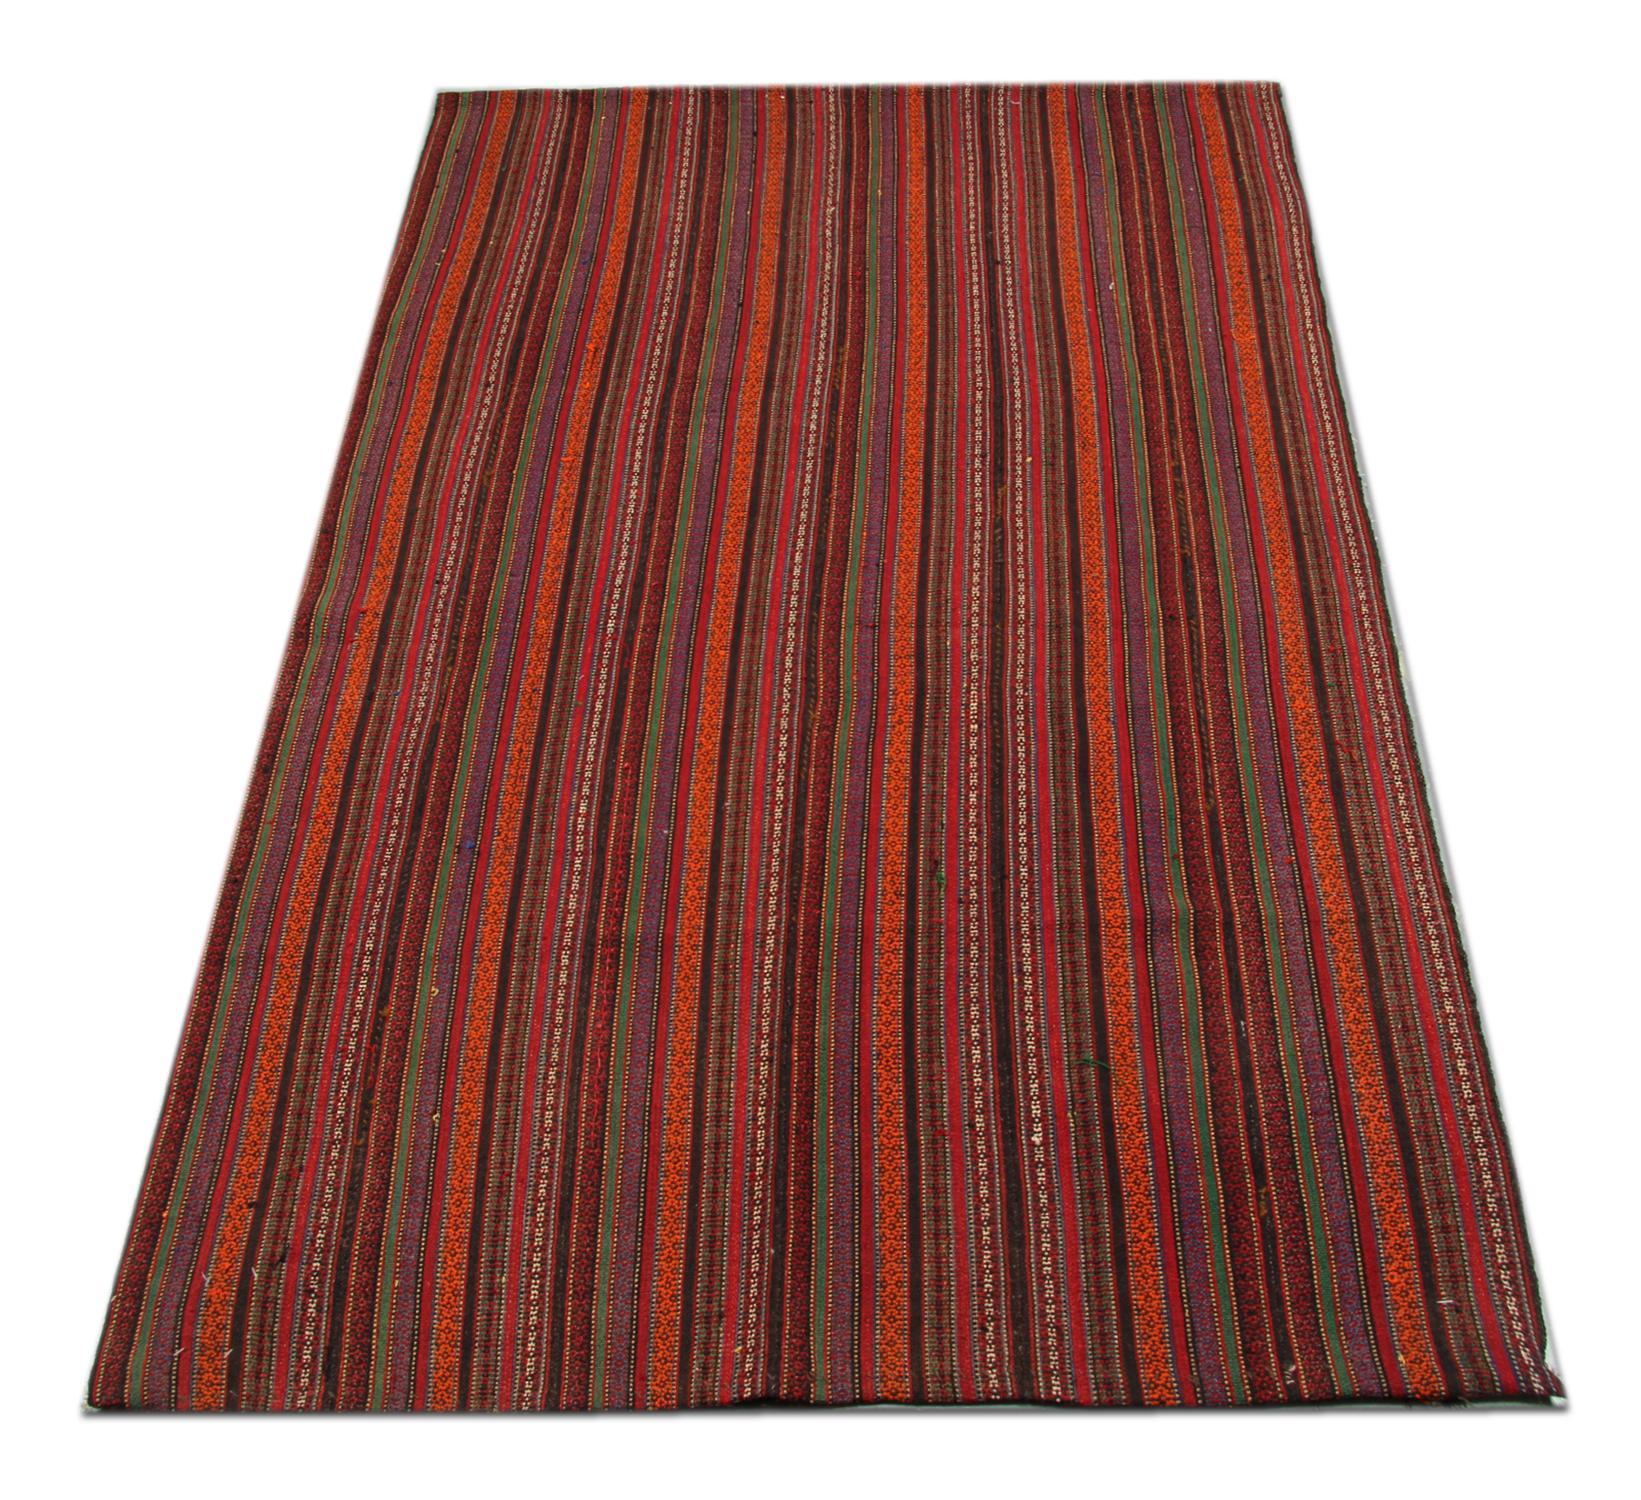 Orange, rouge, marron et crème composent l'élégant tapis rayé, un motif géométrique tissé dans cet élégant Jajim. Tissé à la main avec une grande complexité, ce textile est l'accessoire idéal pour mettre l'accent sur un thème particulier. Le design